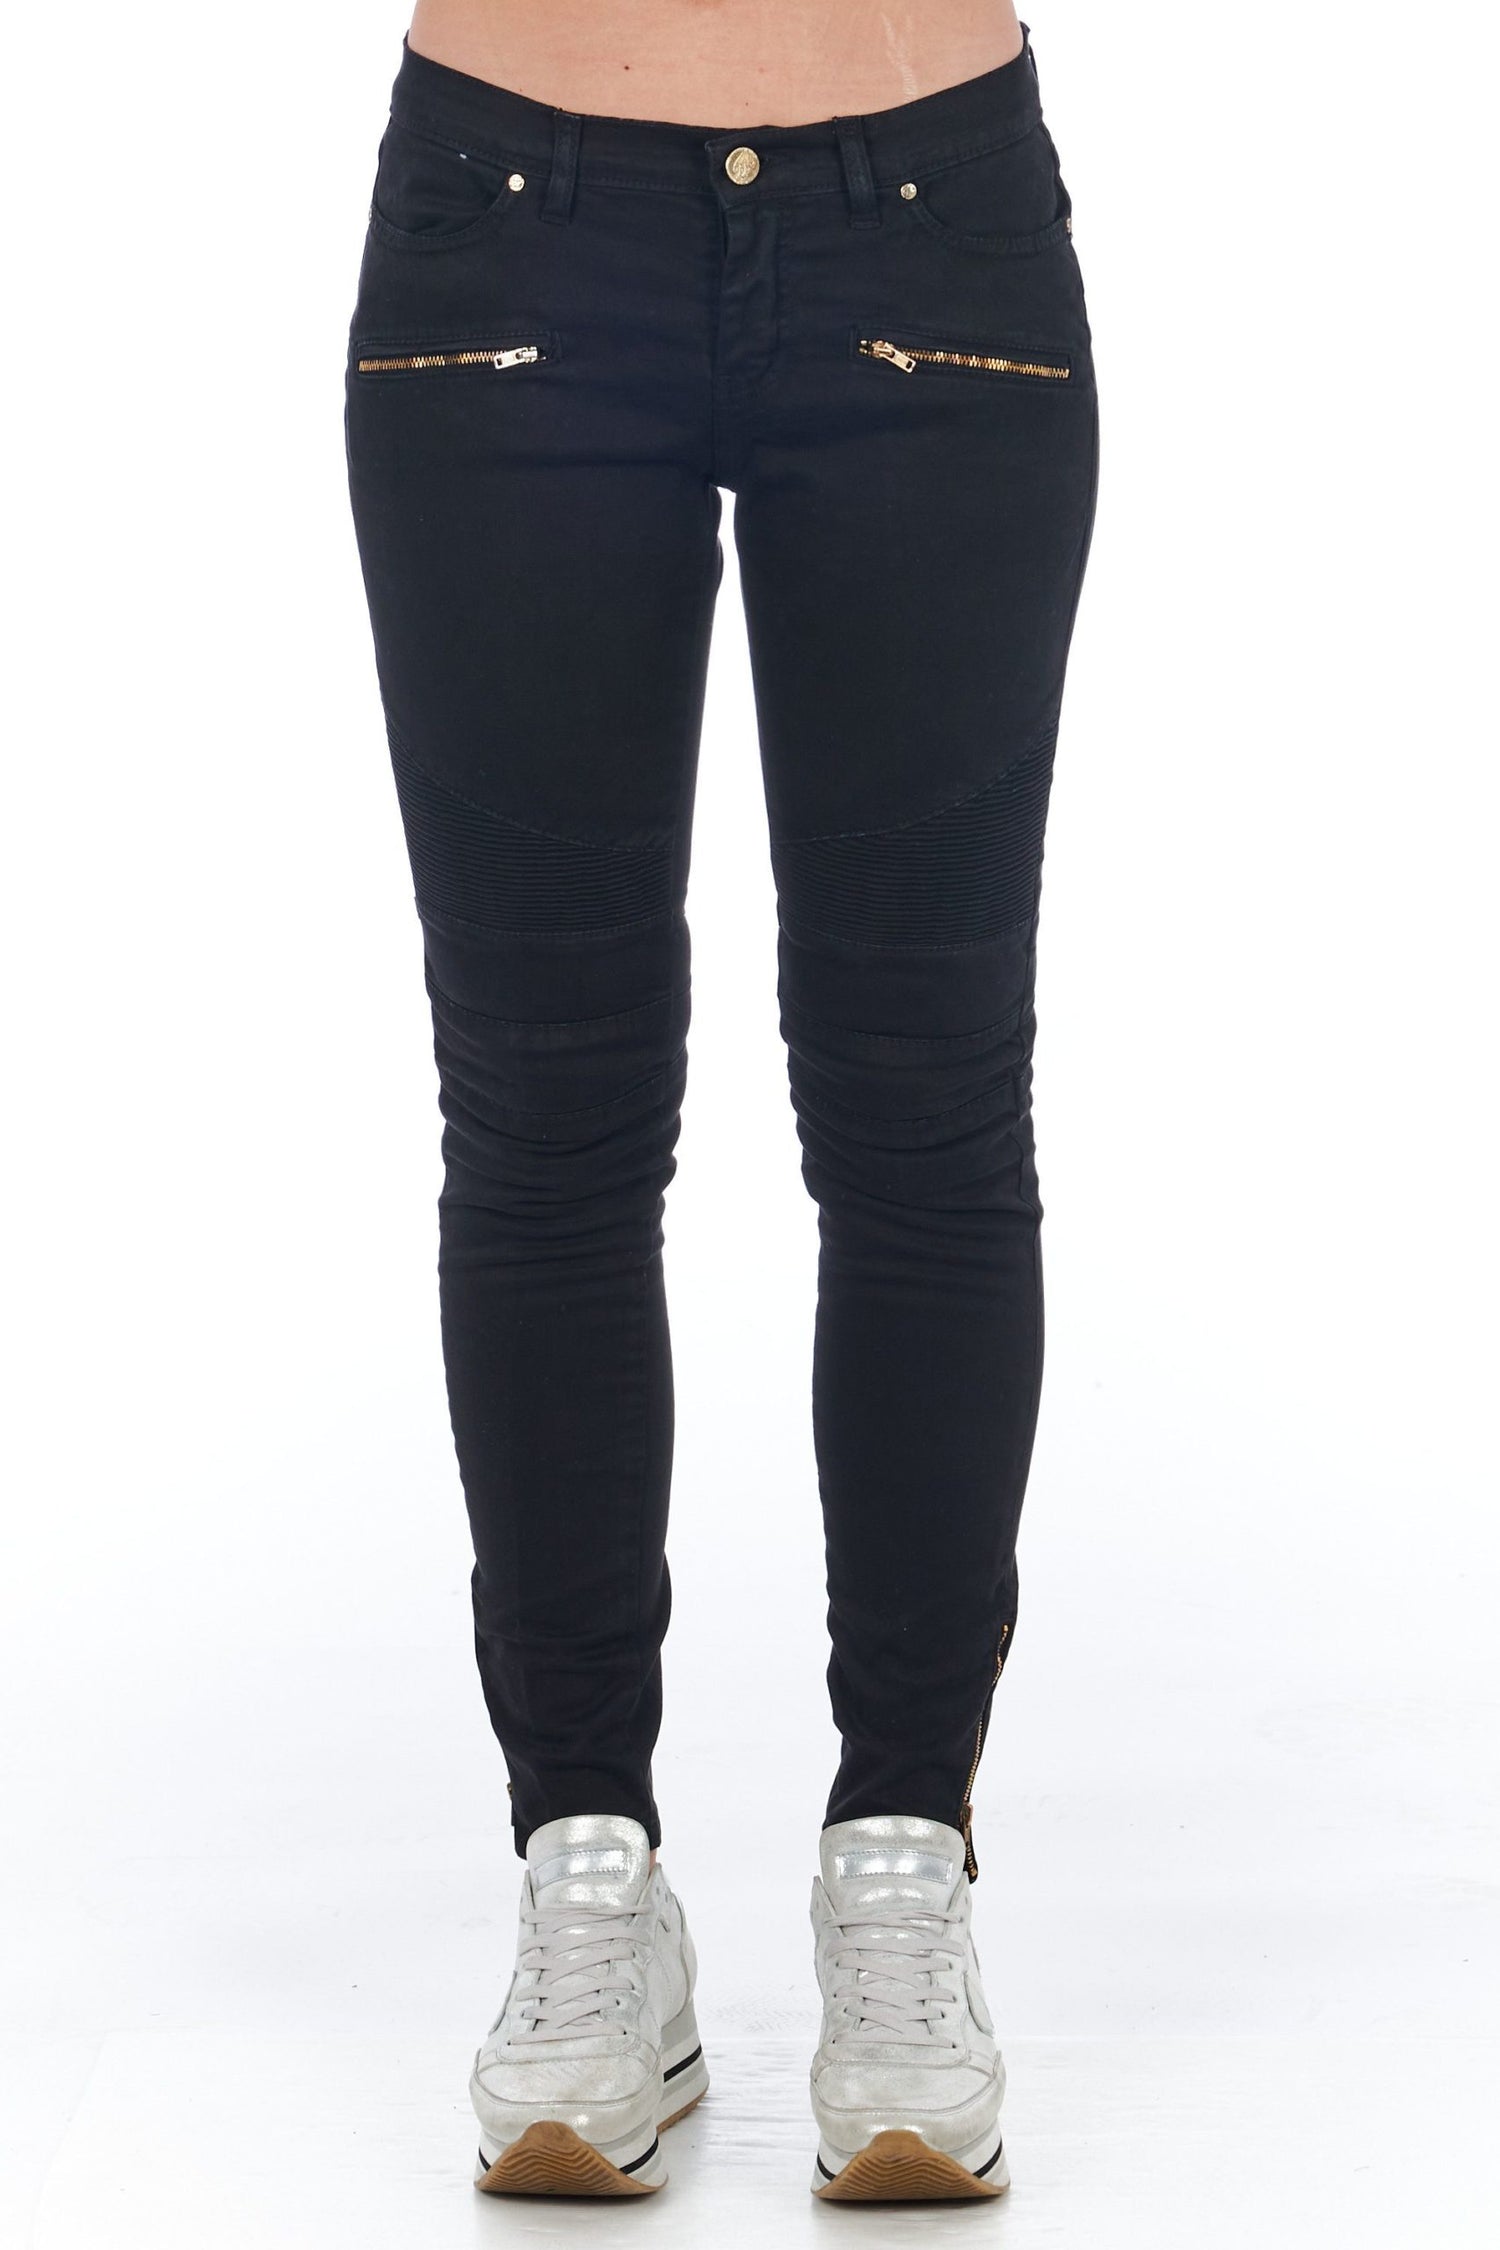 Frankie Morello Black Cotton Jeans & Pant - DEA STILOSA MILANO